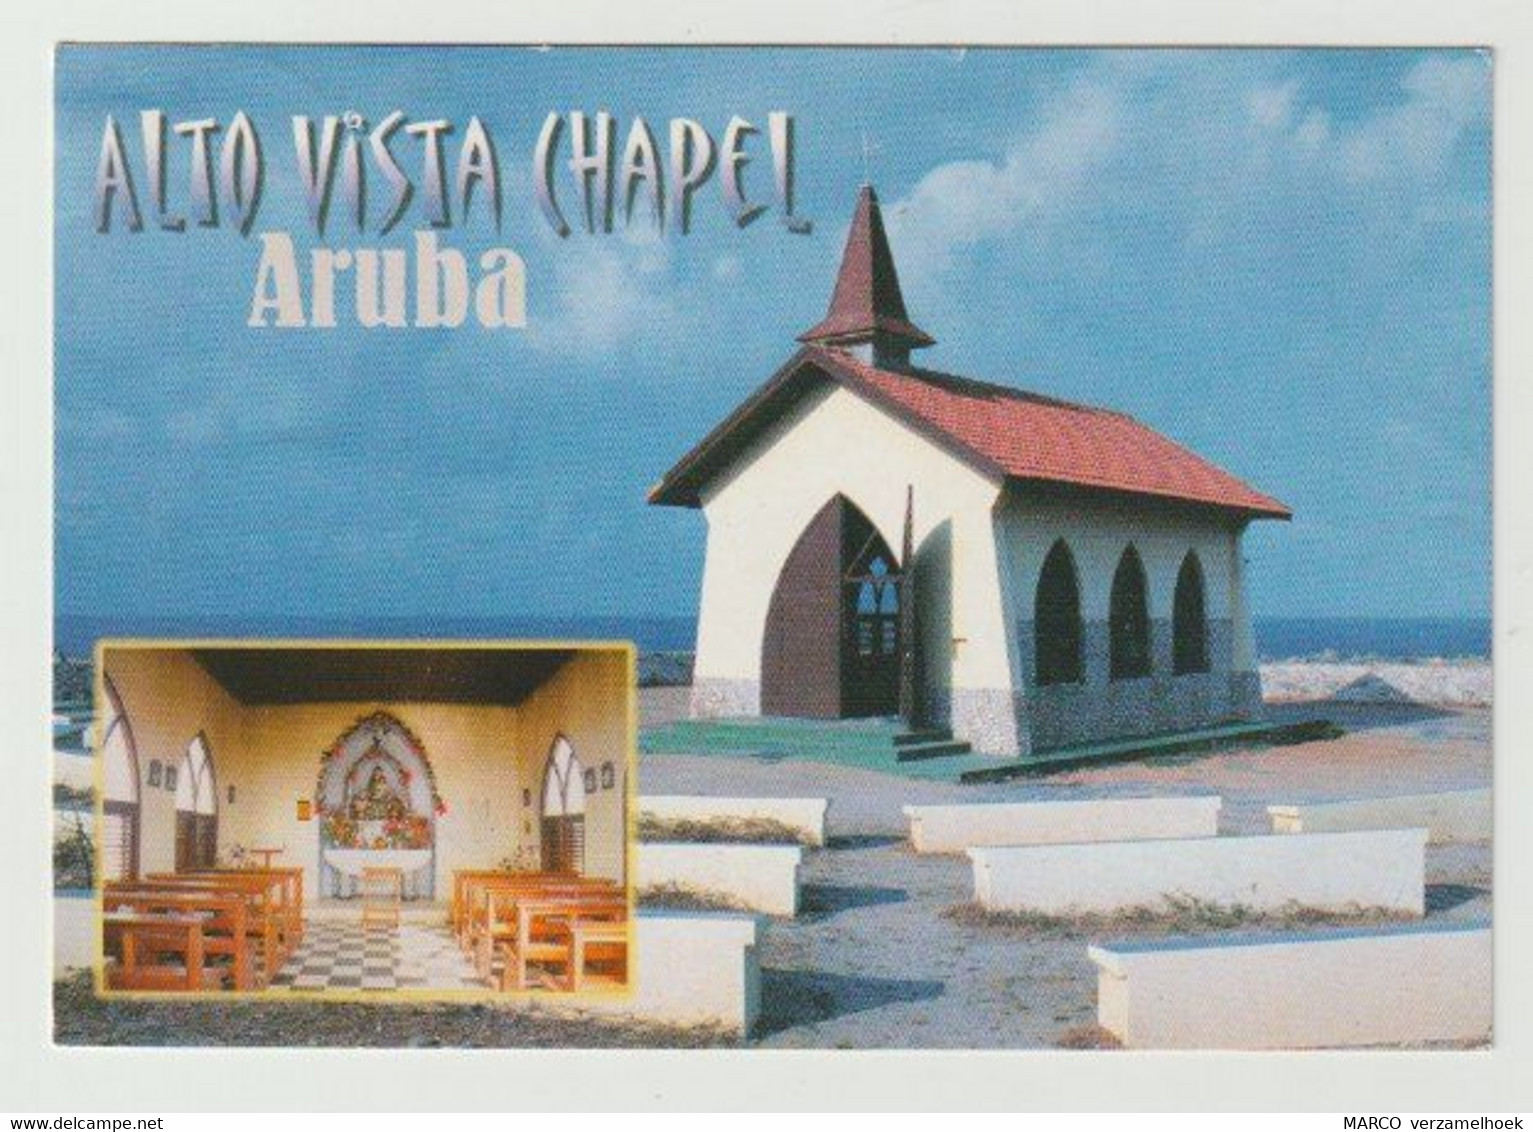 Ansichtkaart-postcard Alto Vista Chapel Aruba (N-A) - Aruba